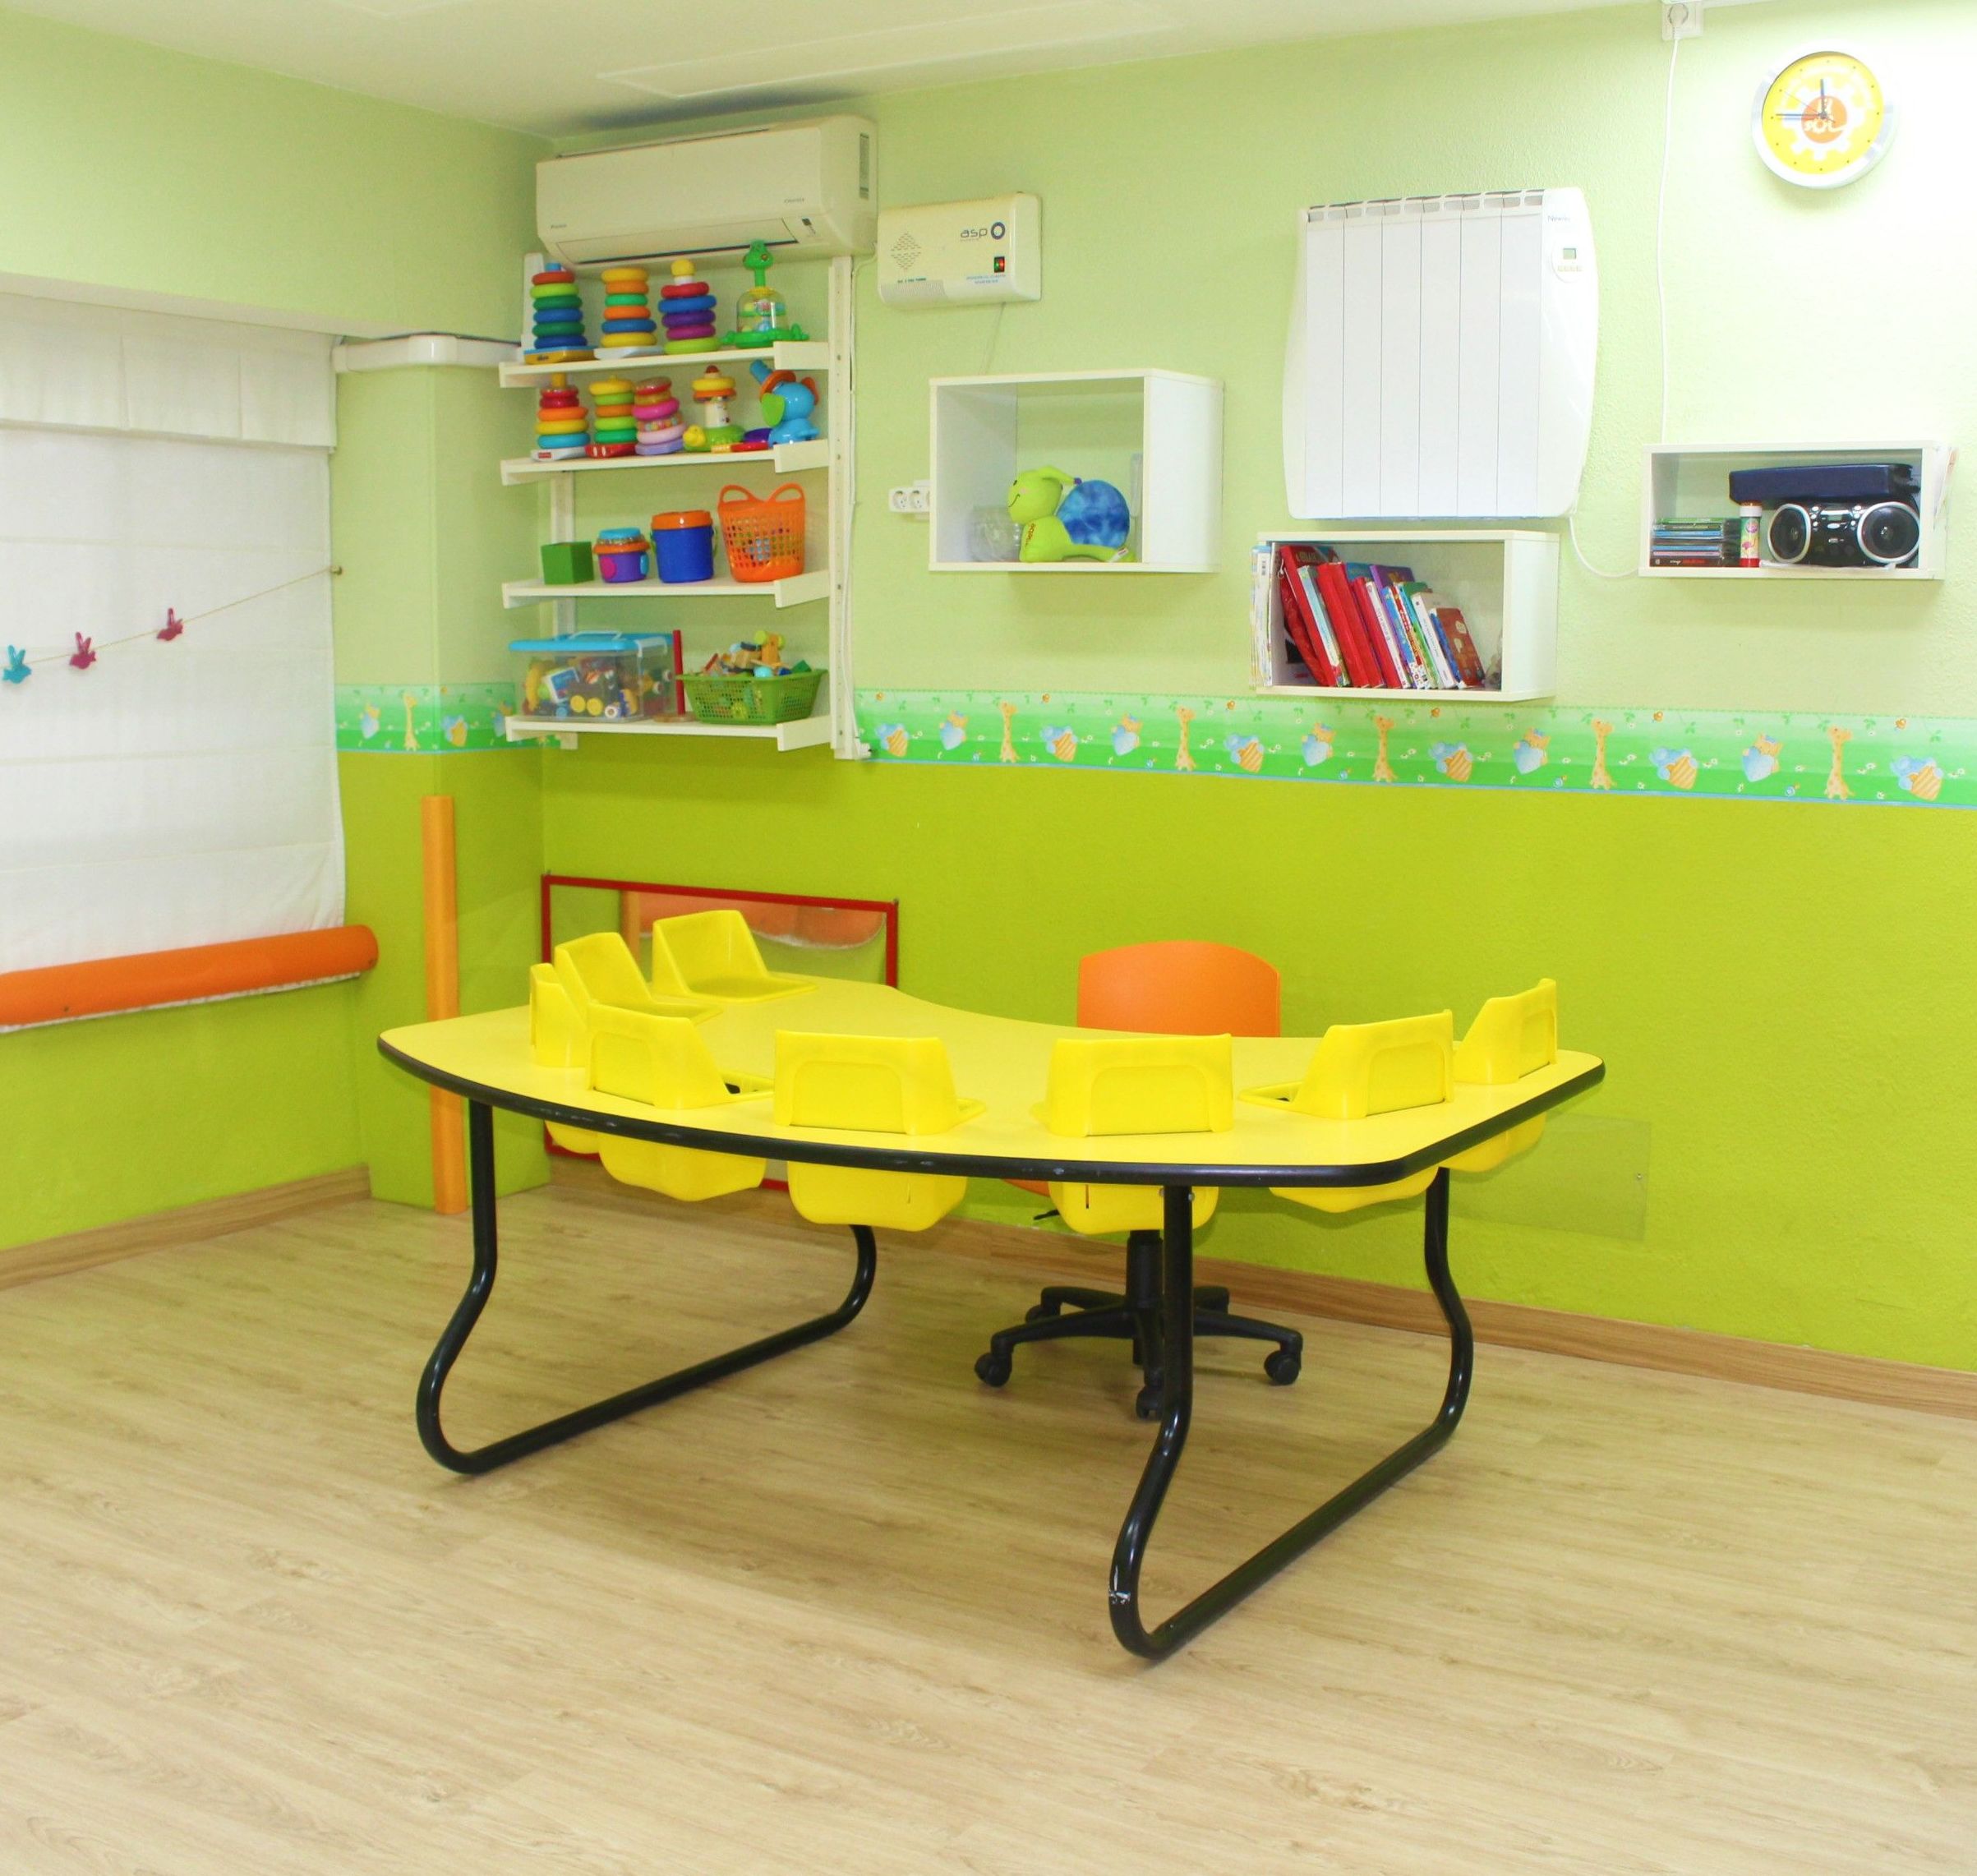 Foto 10 de Guarderías y Escuelas infantiles en Madrid | Escuela Infantil Pippo